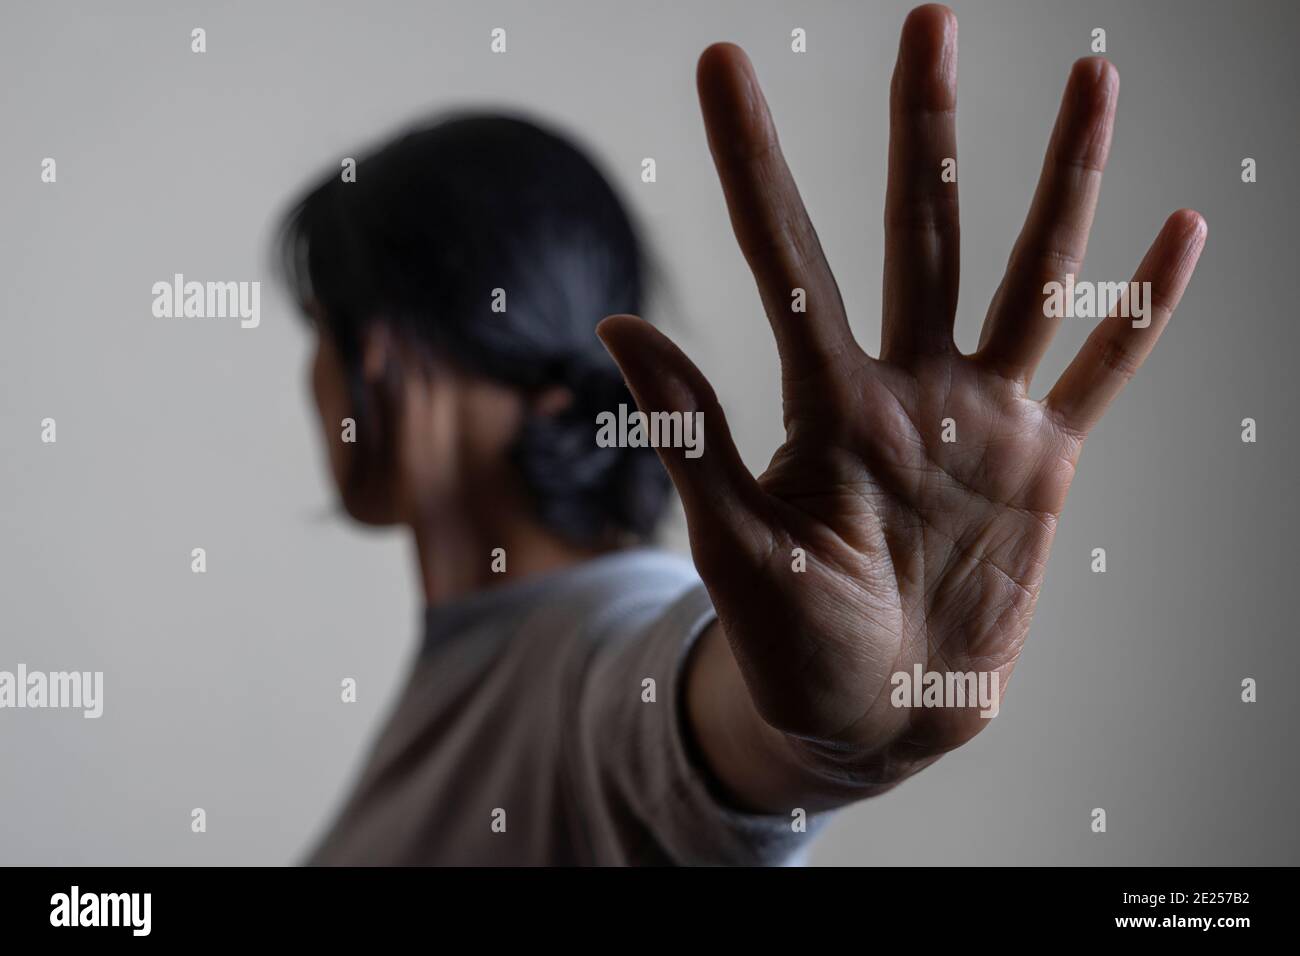 La mujer levanta la mano y se muestra detener gesto a mano tratando de detener cualquier peligro que viene. Signo de lenguaje no verbal Foto de stock